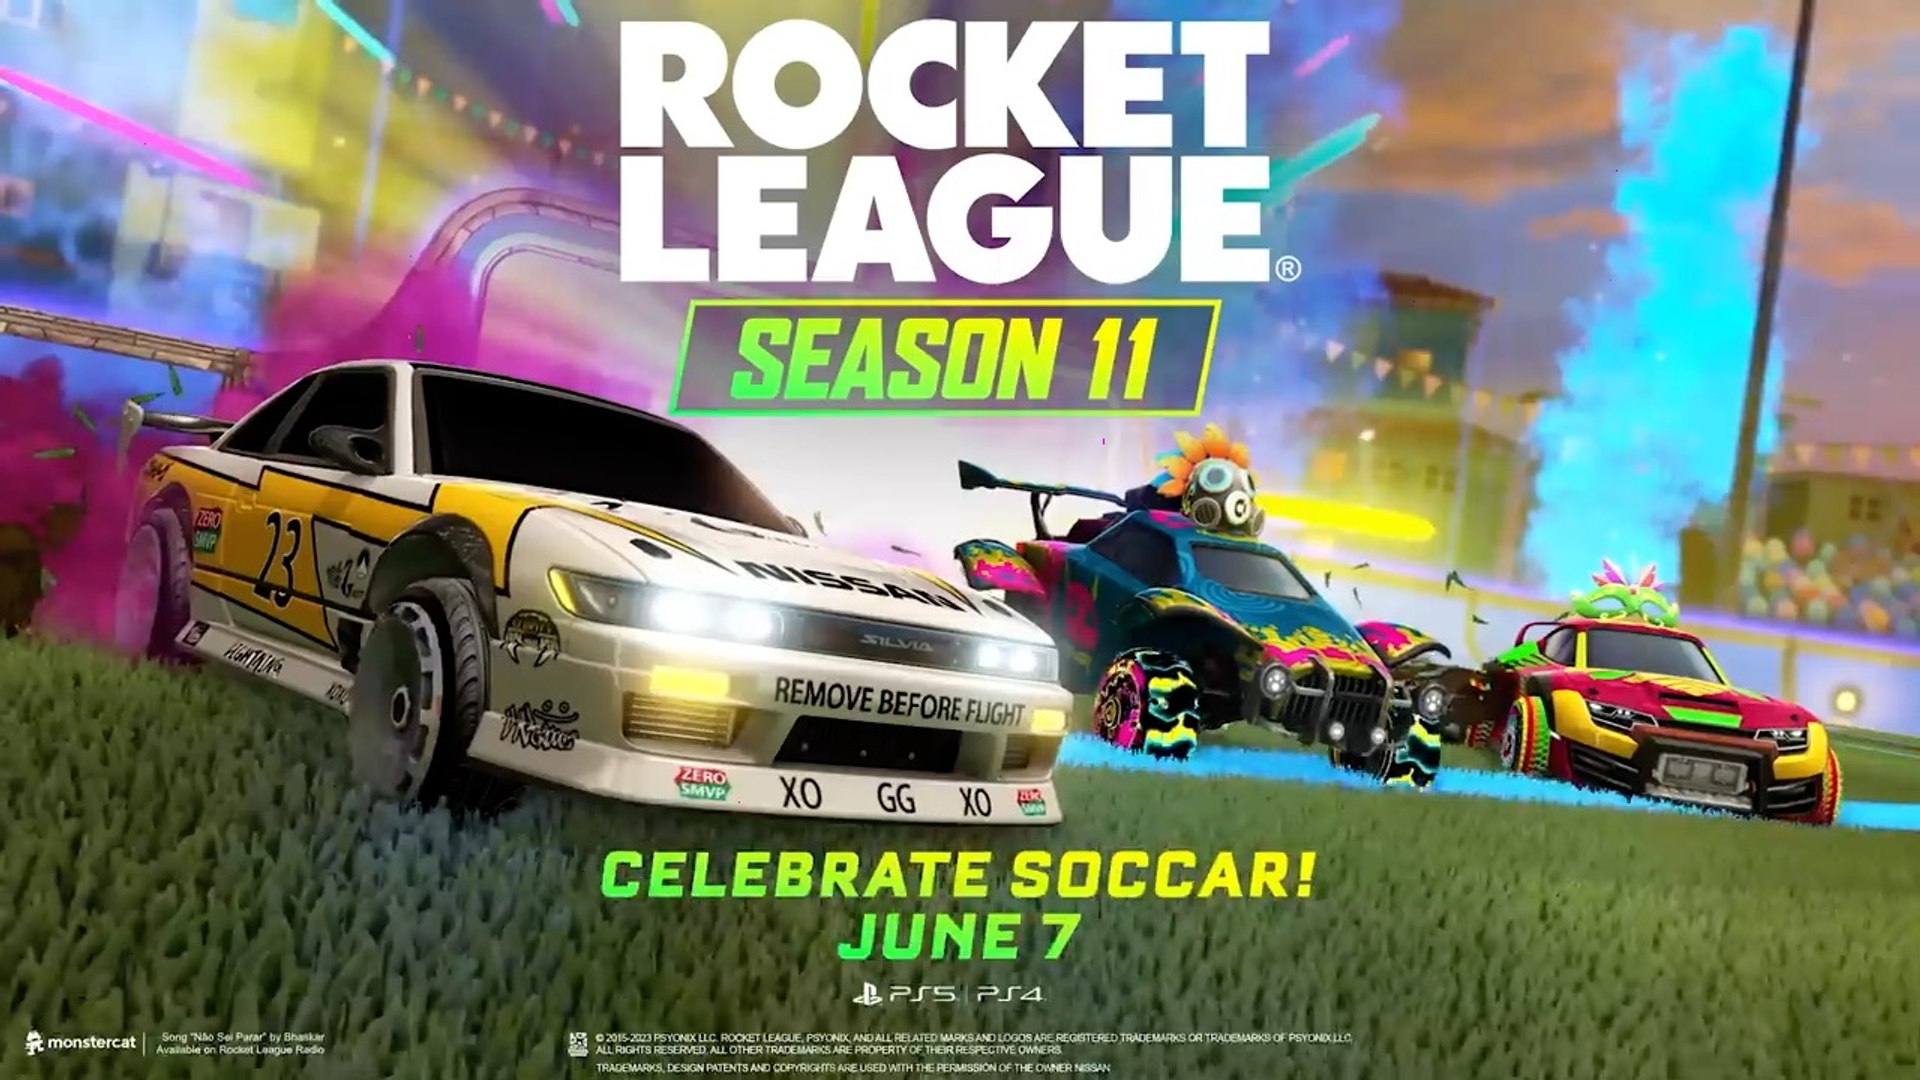 Rocket League - Official Lightning McQueen Trailer